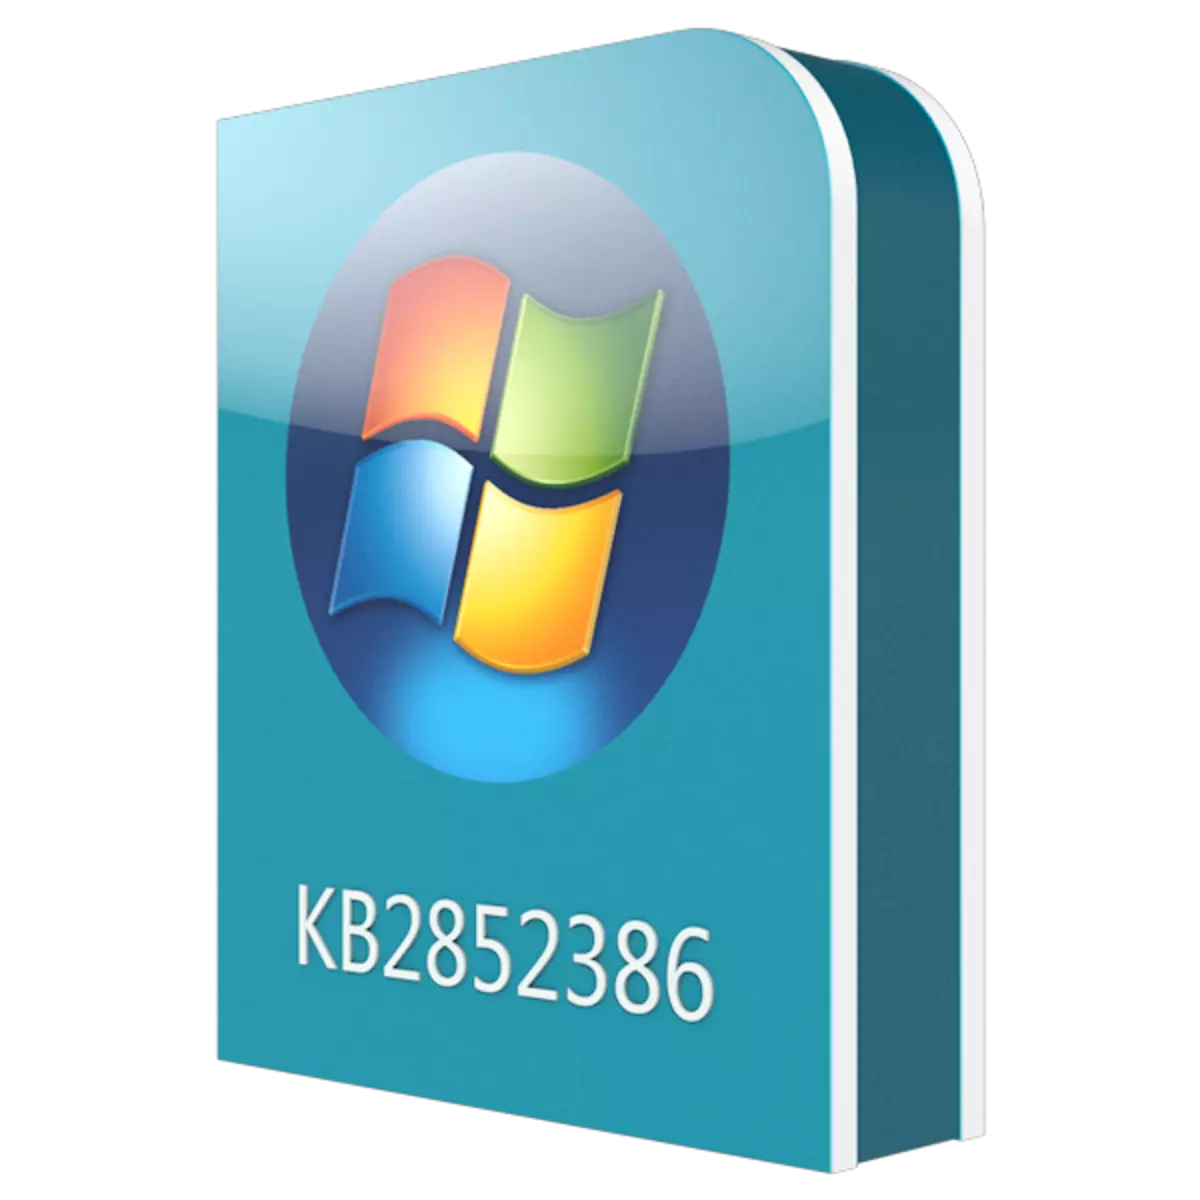 下载更新KB2852386的Windows 7 64位系统